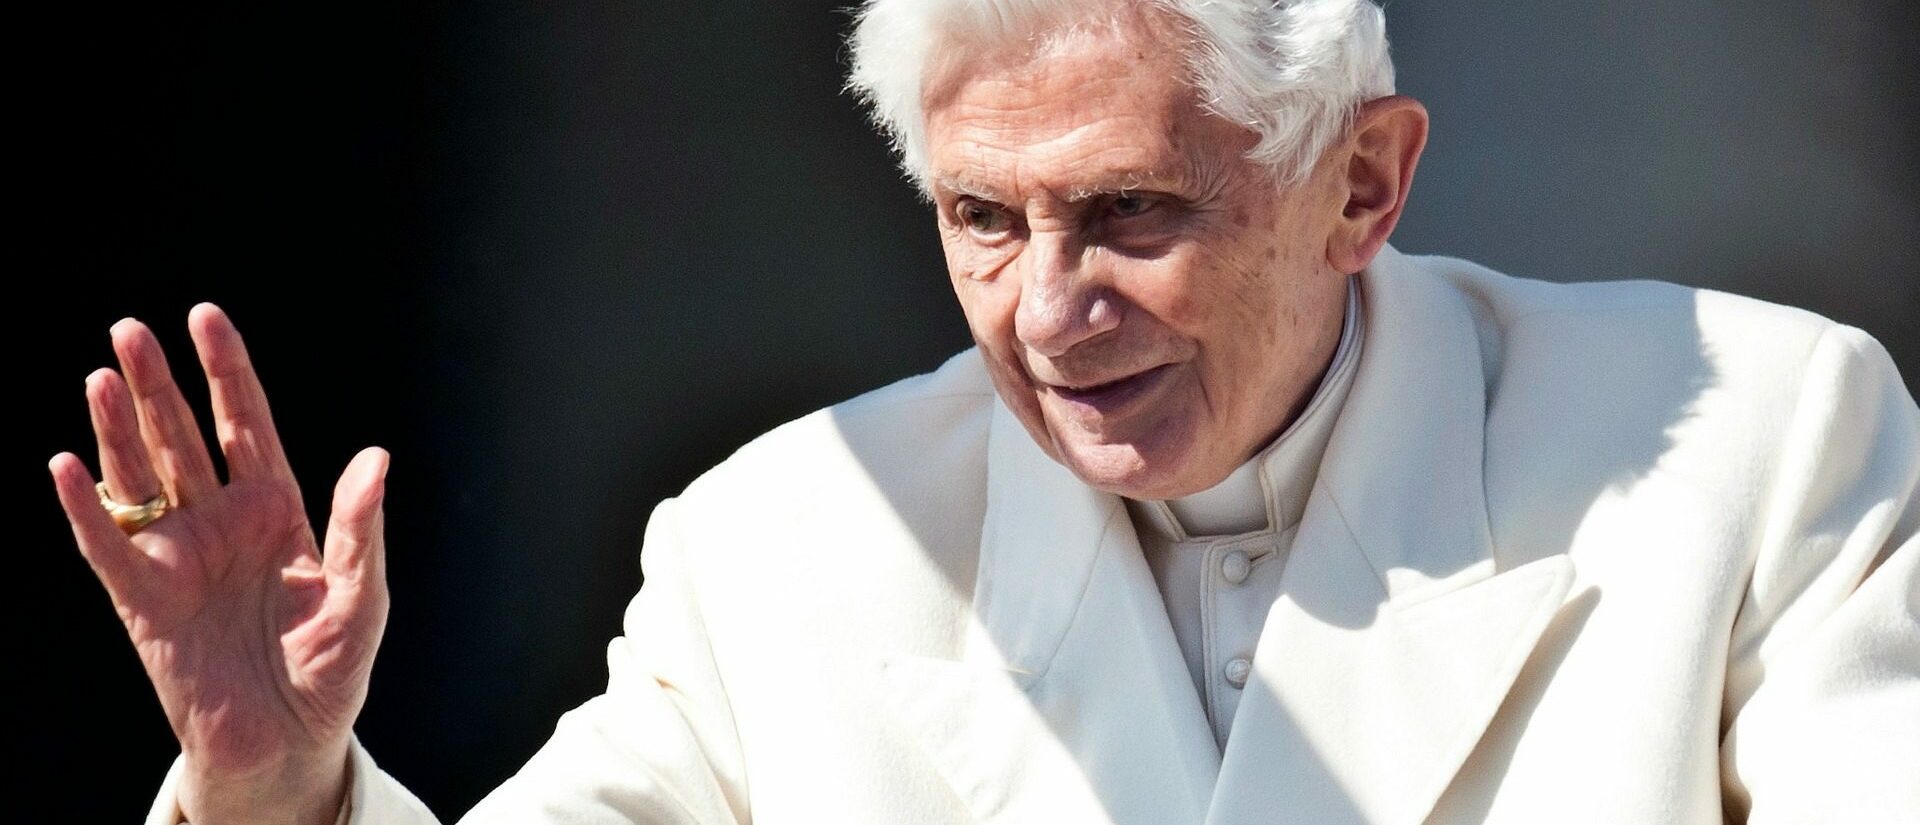 Selon Benoît XVI, il est nécessaire que les porte-parole de l'Eglise en Allemagne se détachent de leur fonction pour témoigner de leur foi | © Catholic Church of England/Flickr/CC BY-NC-SA 2.0